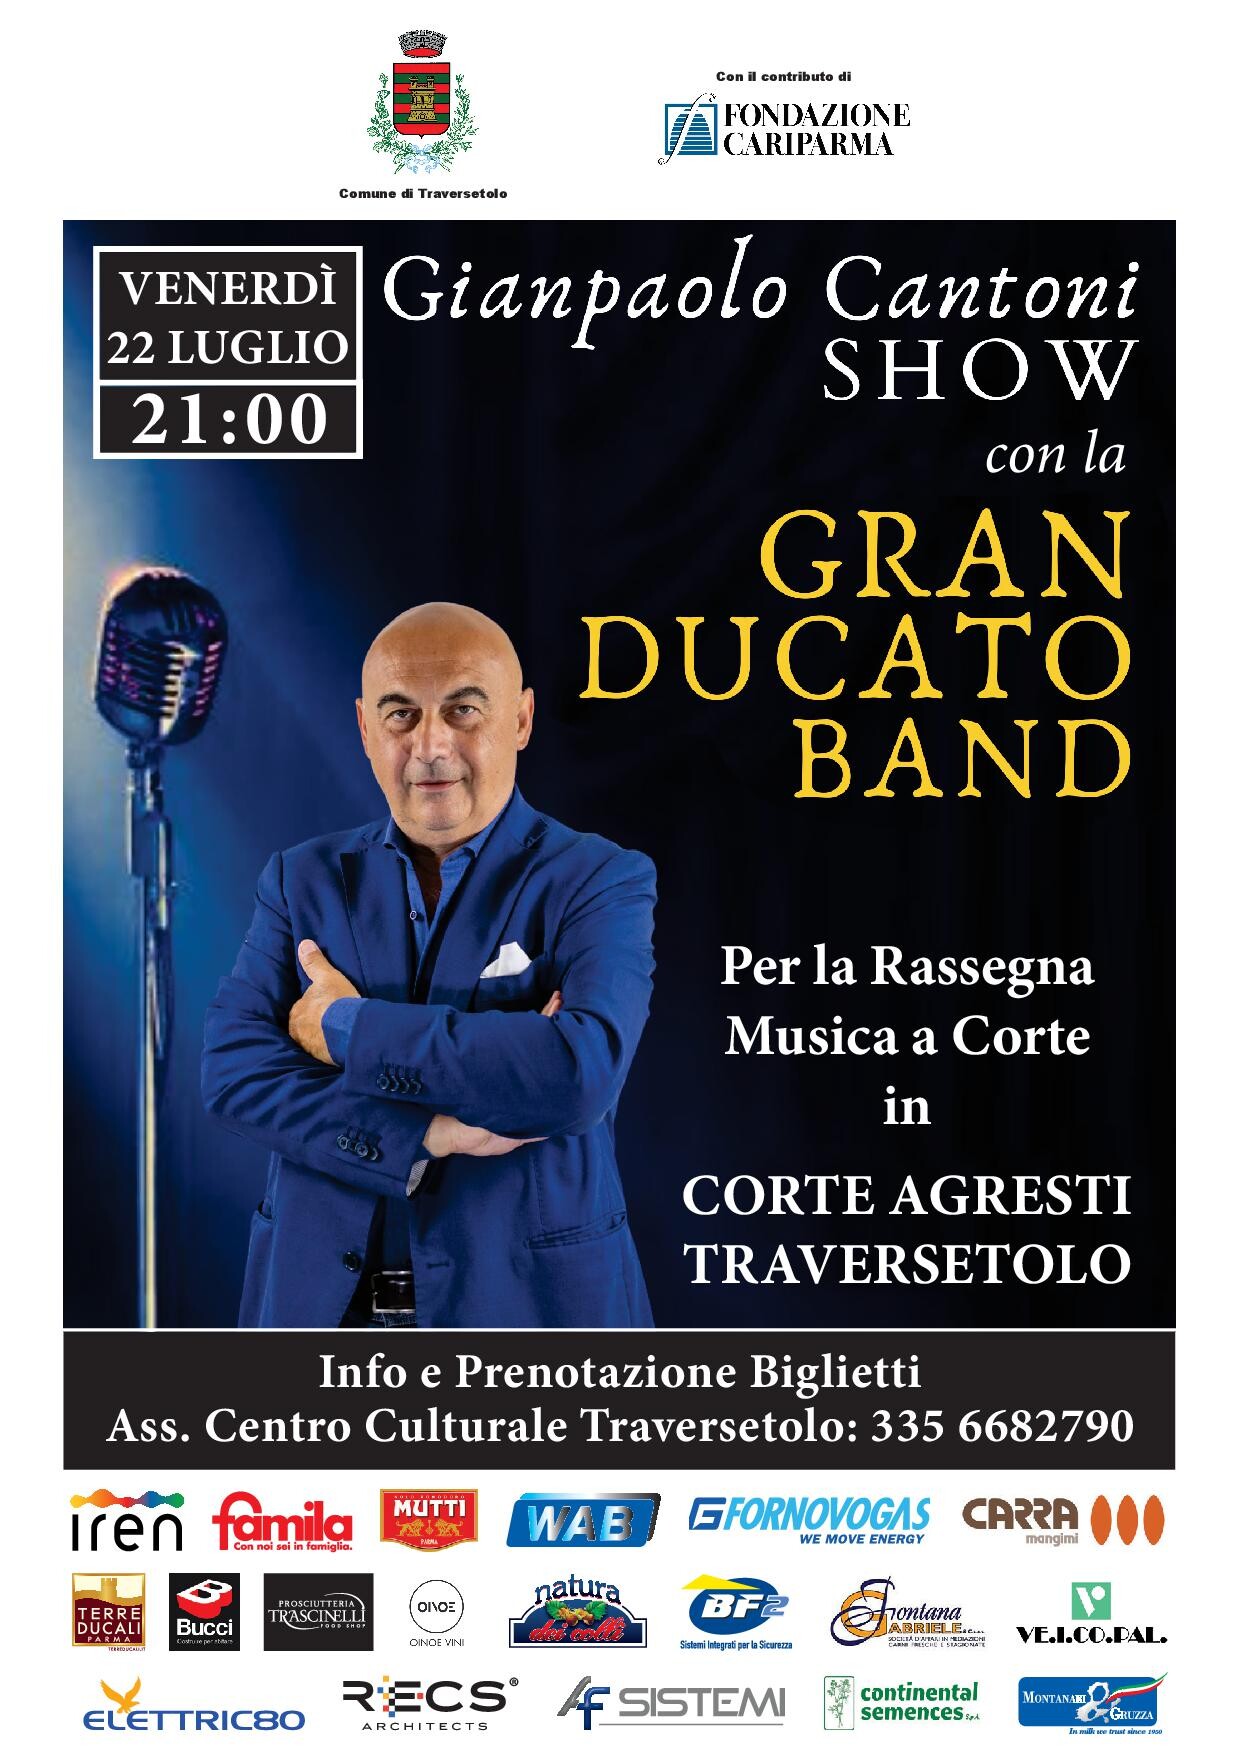 Gianpaolo Cantoni Show con la Gran Ducato Band in Corte Agresti